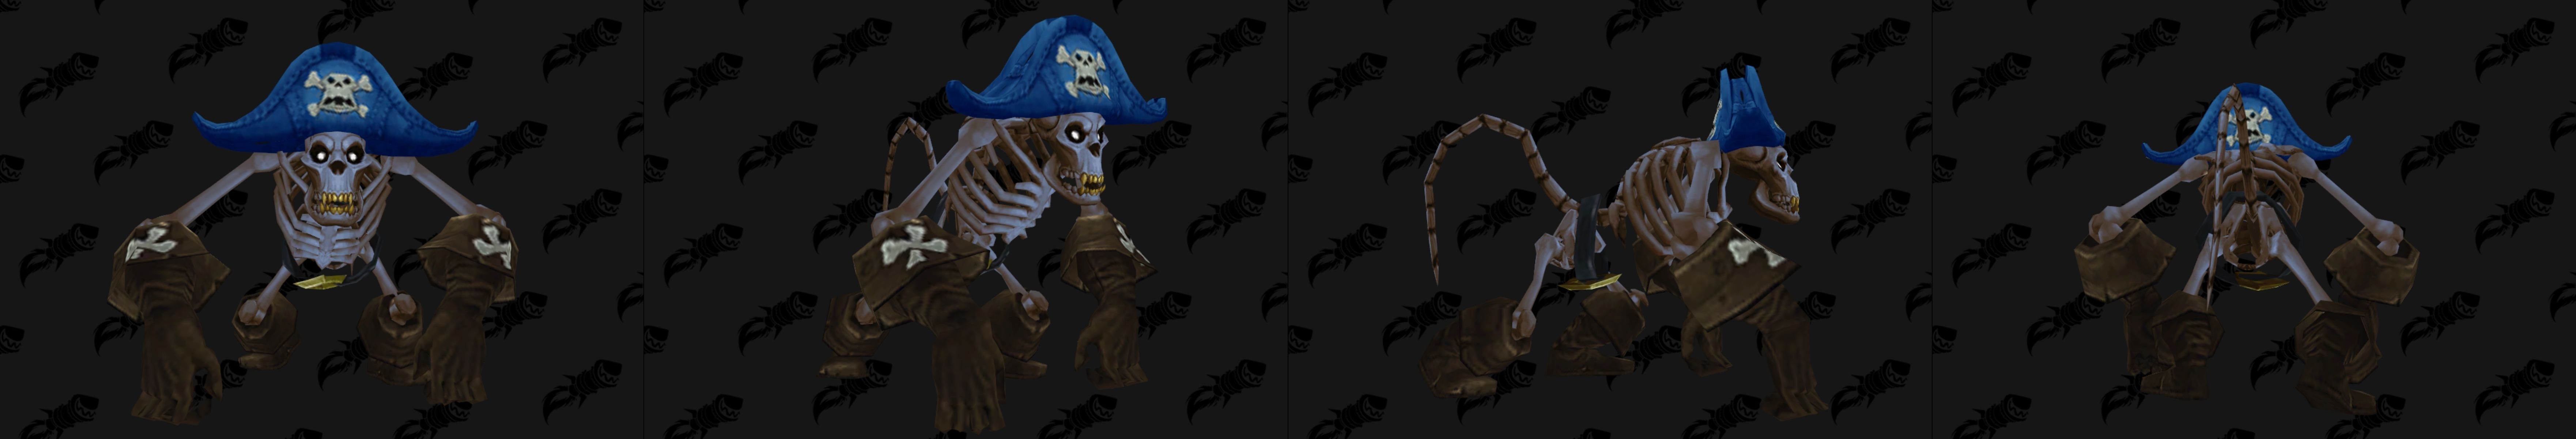 Singe squelette capitaine des pirates - coloris bleu